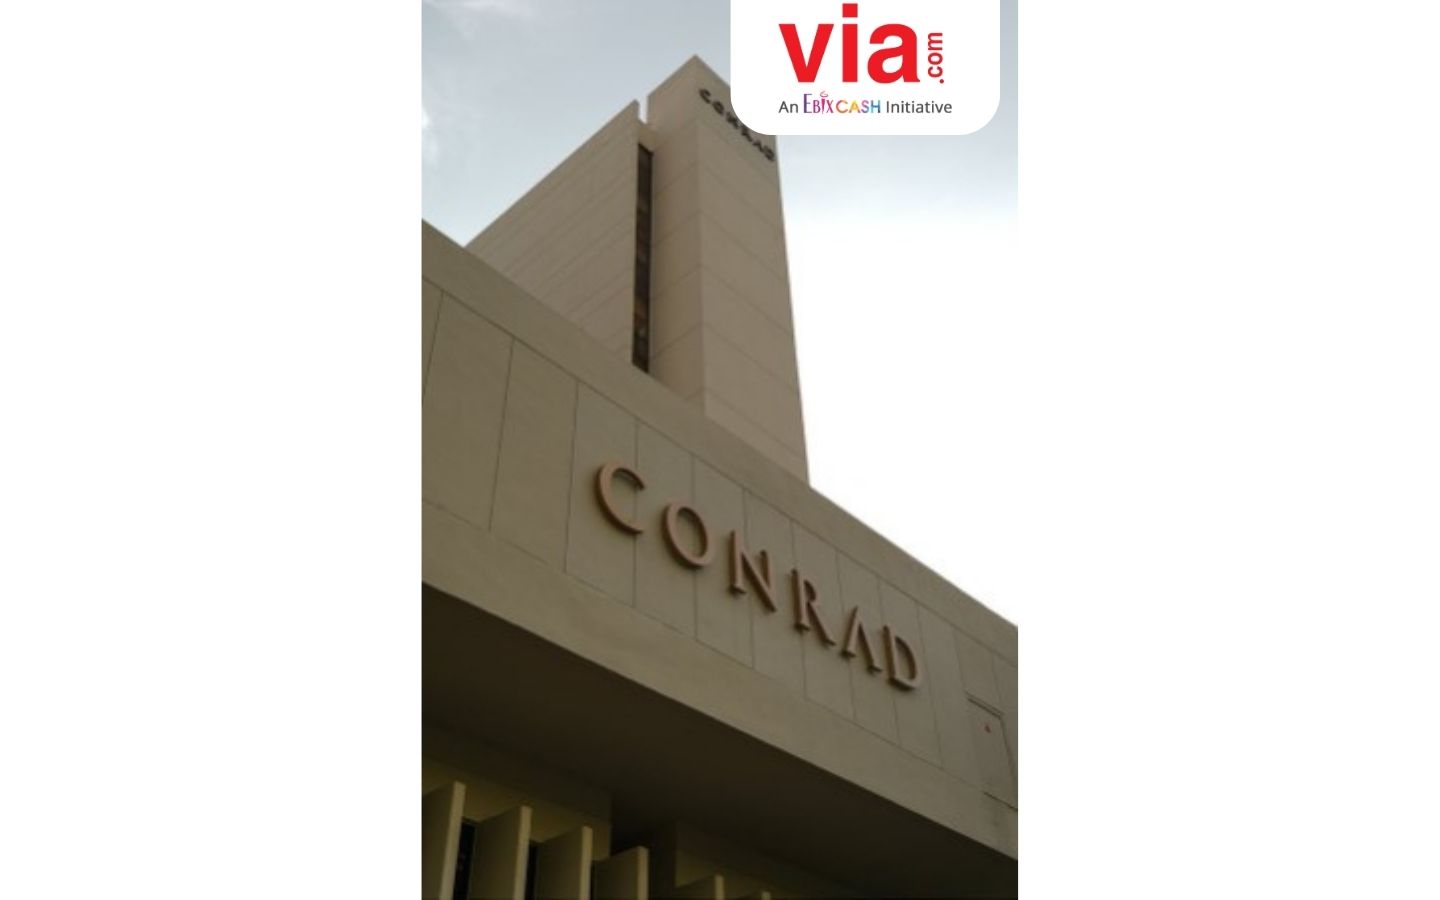 Hotel Favorit untuk Menginap Mewah di Singapura: Conrad Orchard Tersedia di Via.com